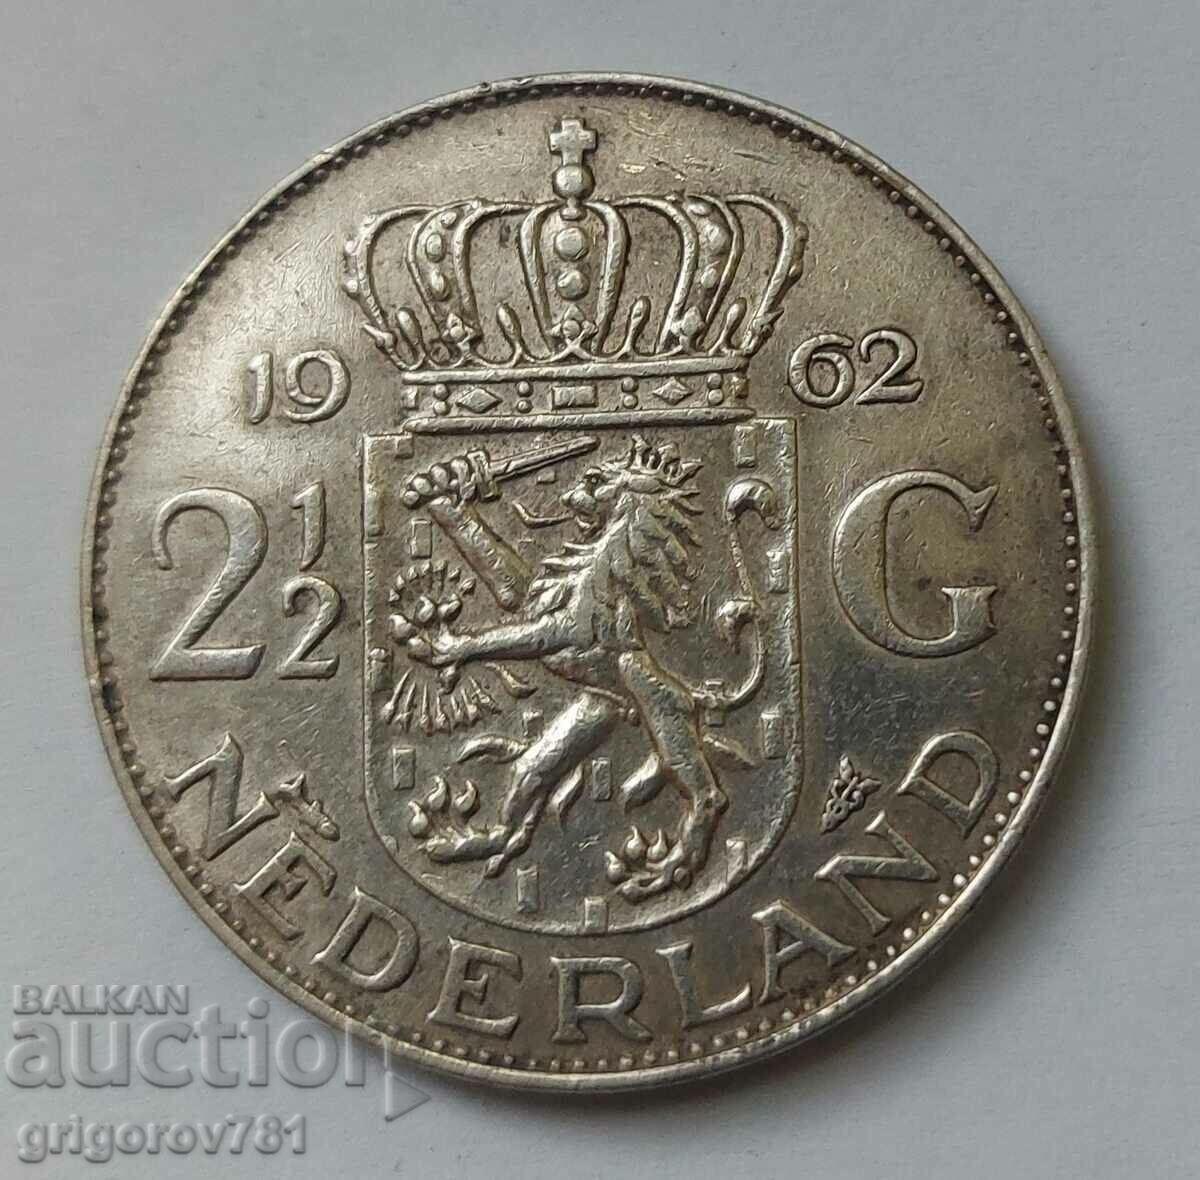 2 1/2 guldeni argint Olanda 1962 - moneda de argint